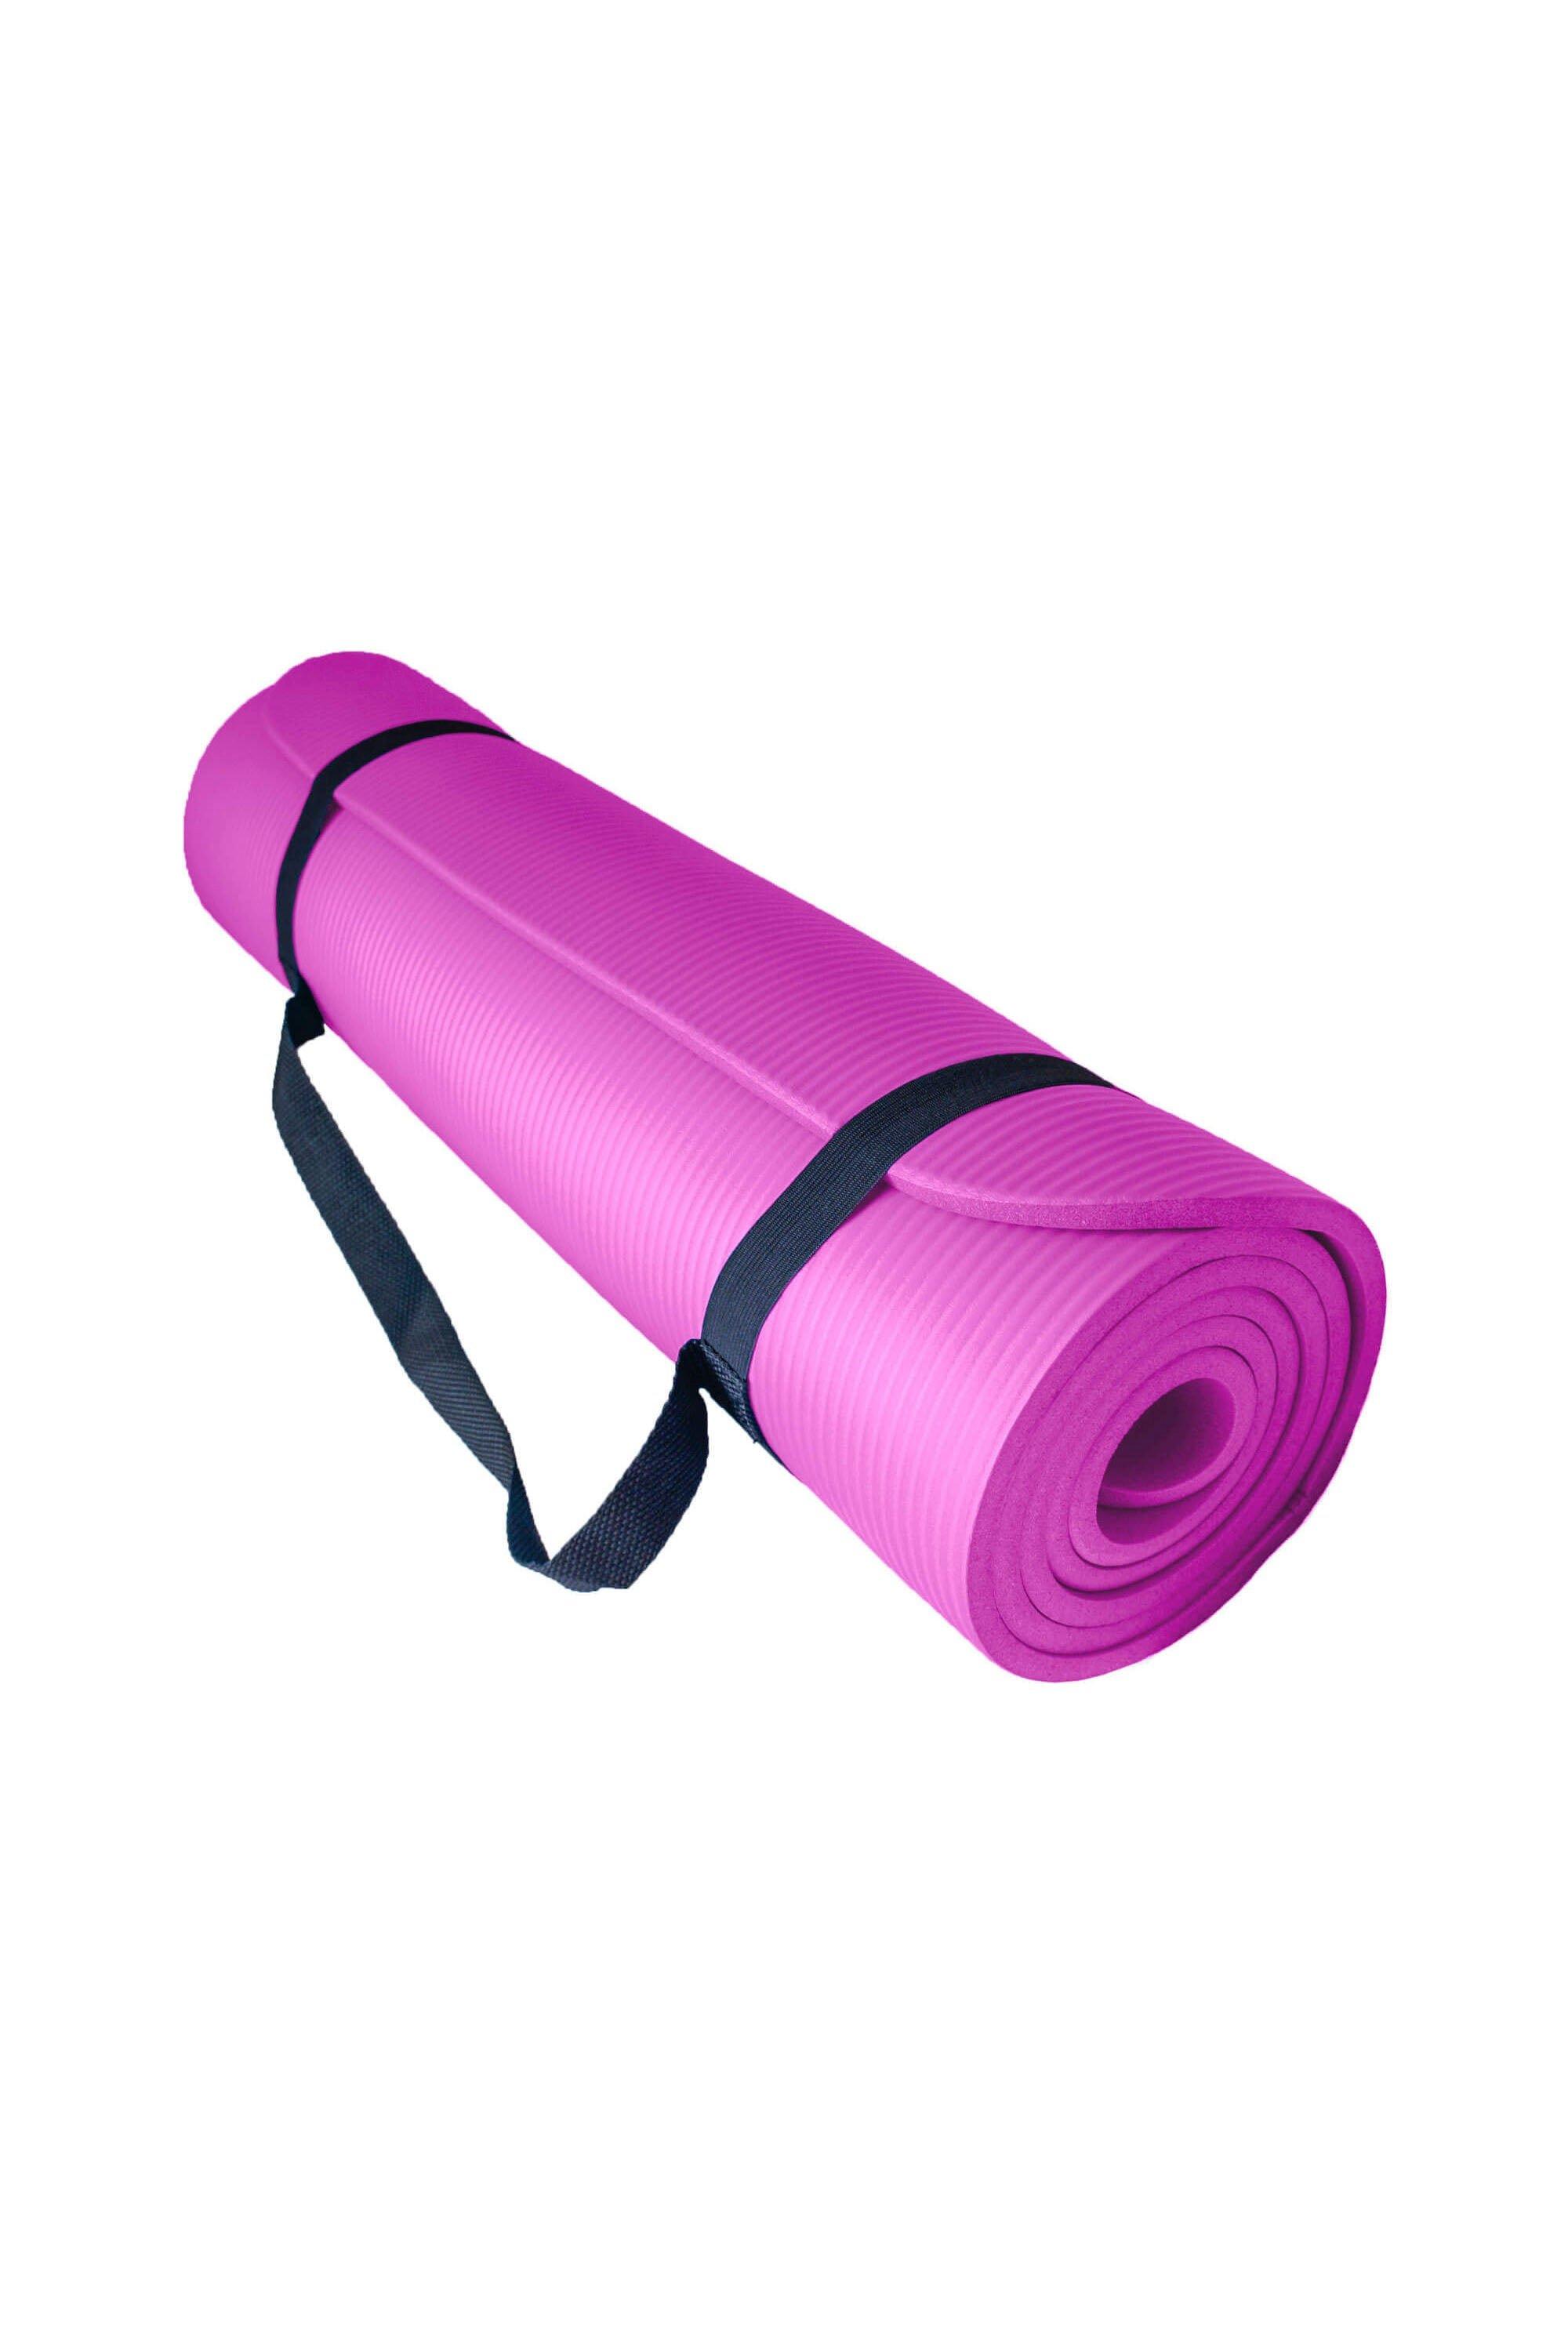 Мягкий коврик для упражнений для йоги с воздушным потоком 10 мм Azure, розовый коврик для йоги triangles yc из микрофибры и каучука